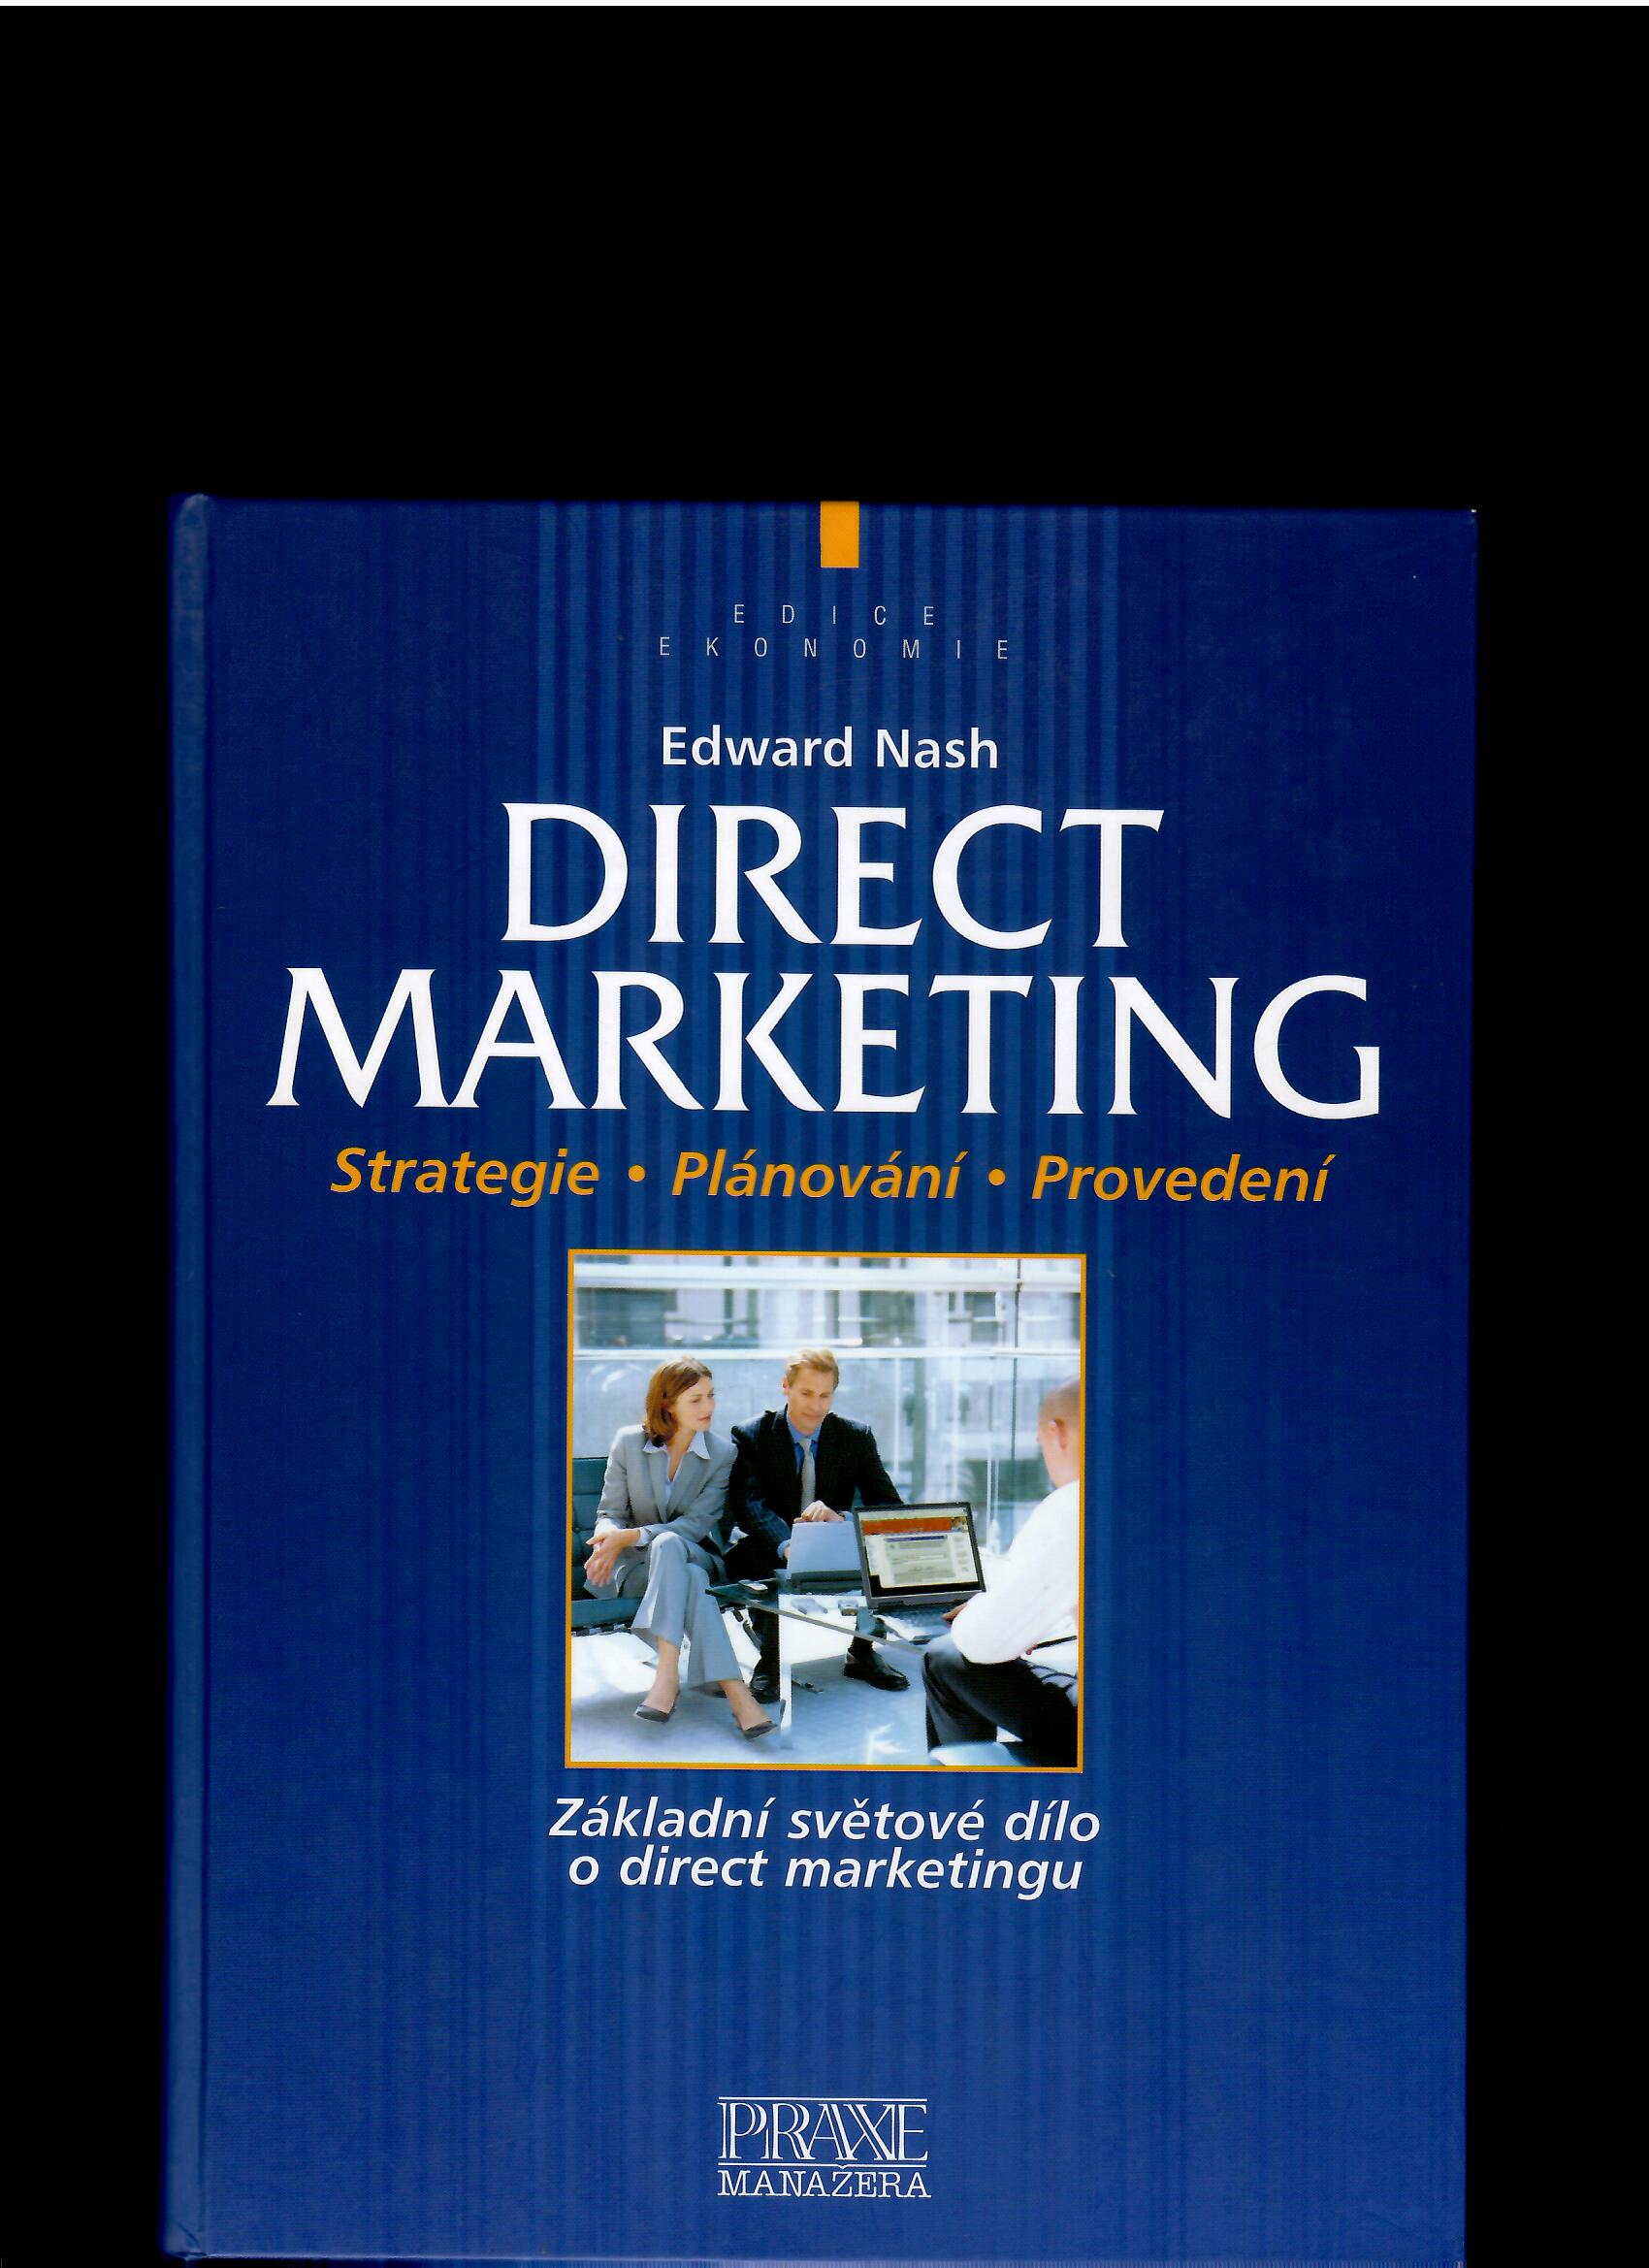 Edward Nash: Direct Marketing